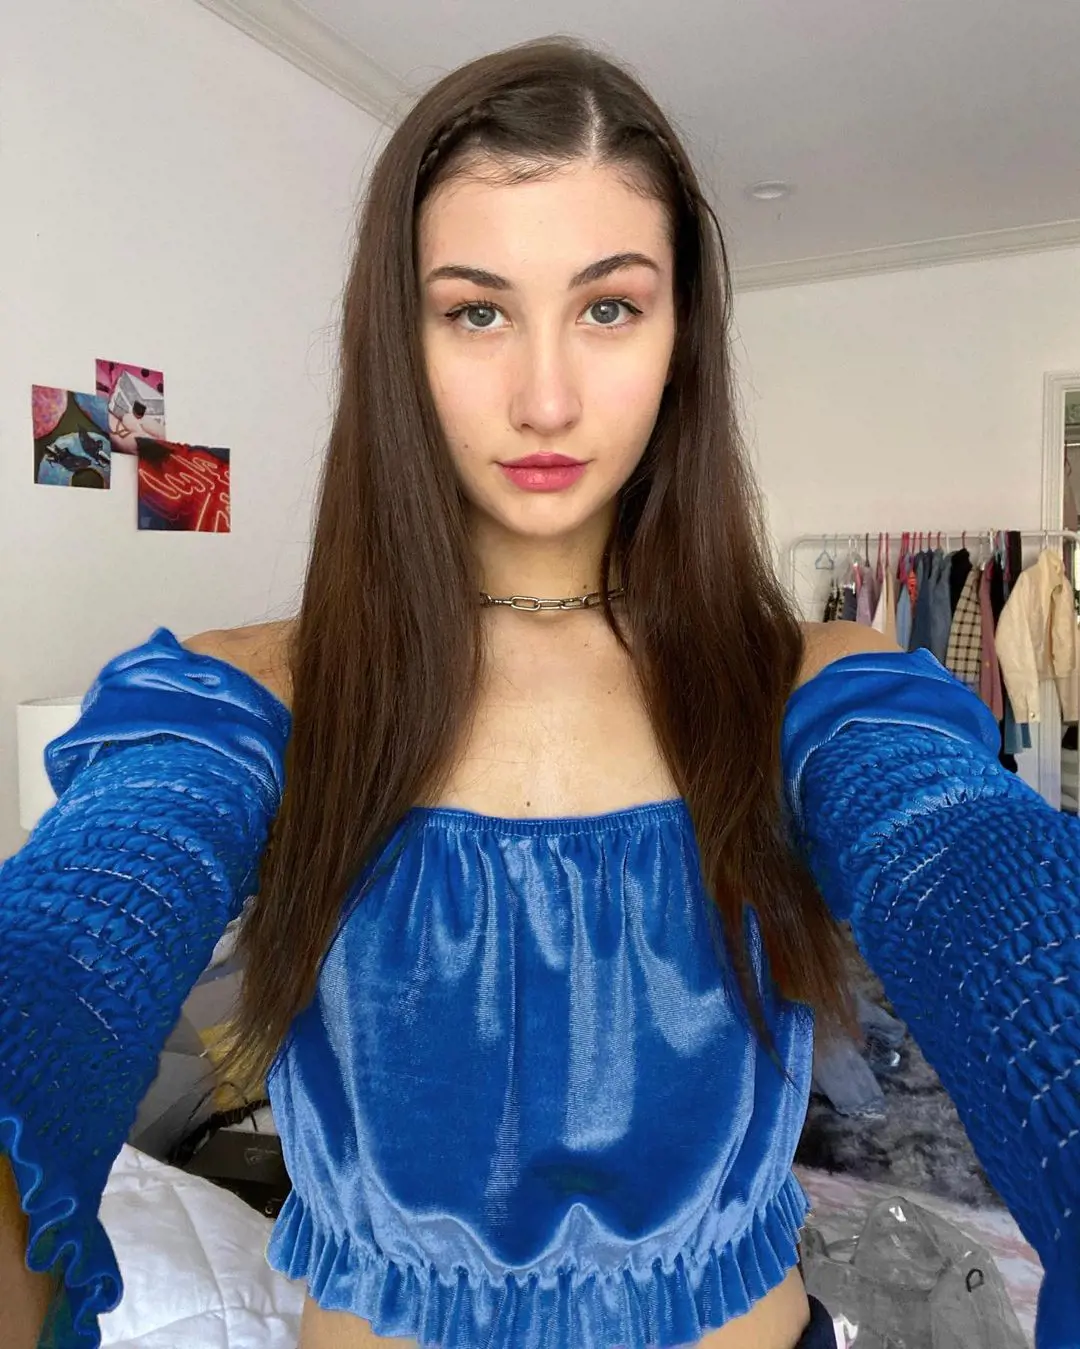 Meg uploaded her picture wearing a blue off-shoulder top on December 9, 2019